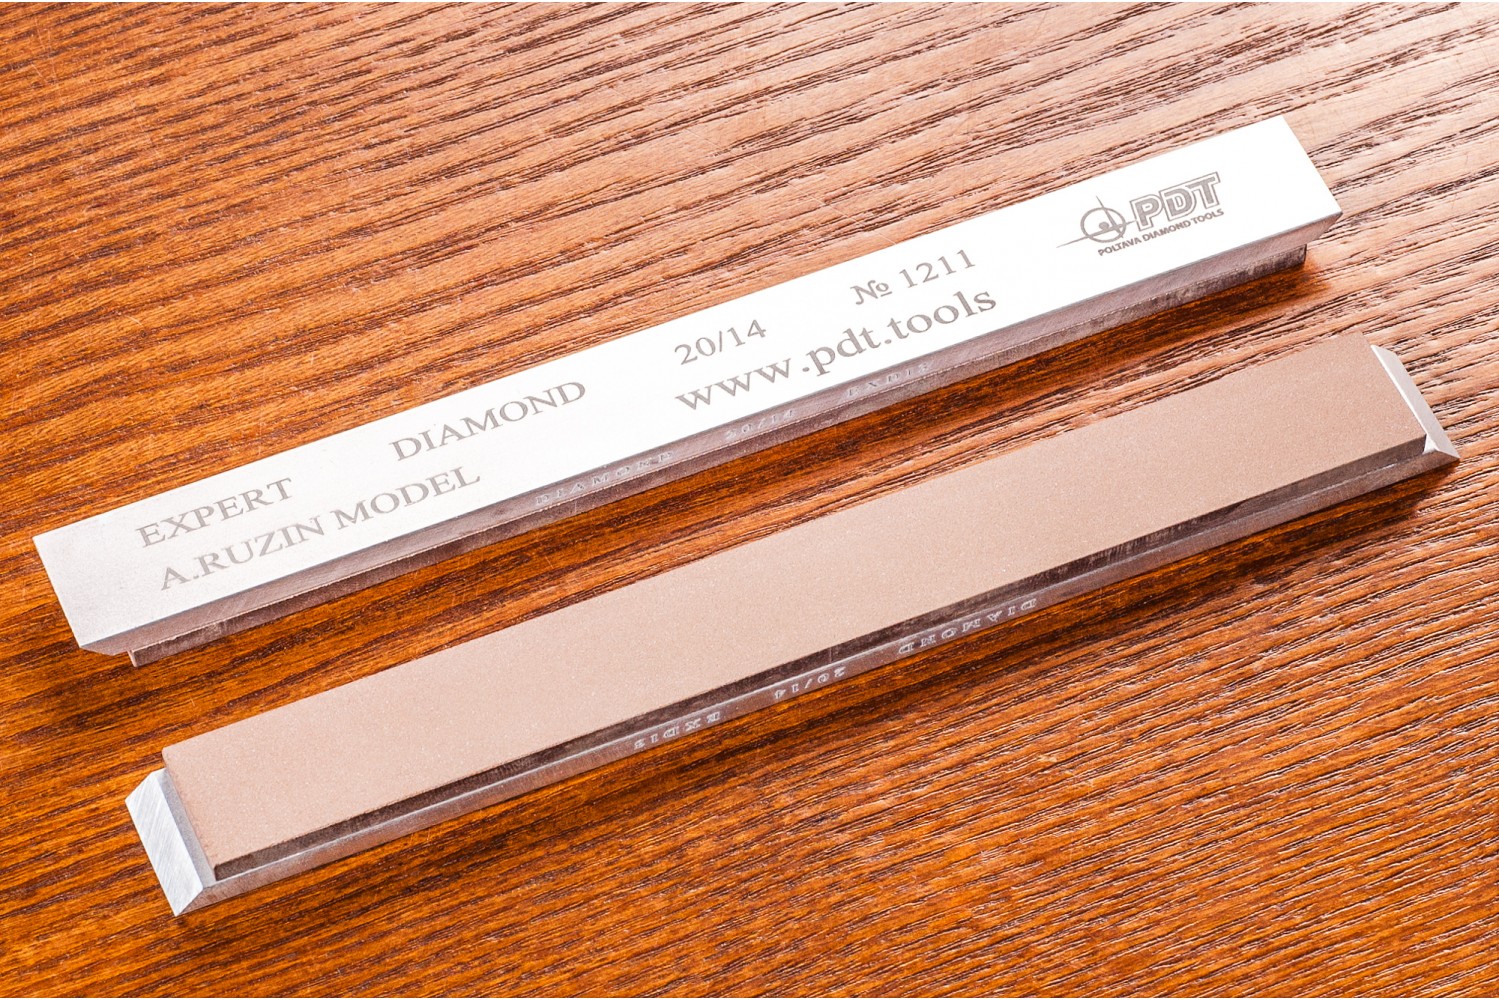 Алмазный брусок для заточки PDT EXPERT 150-17-3мм 20/14 мкм на алюминиевом бланке водный точильный камень для заточки инструментов suehiro 1000